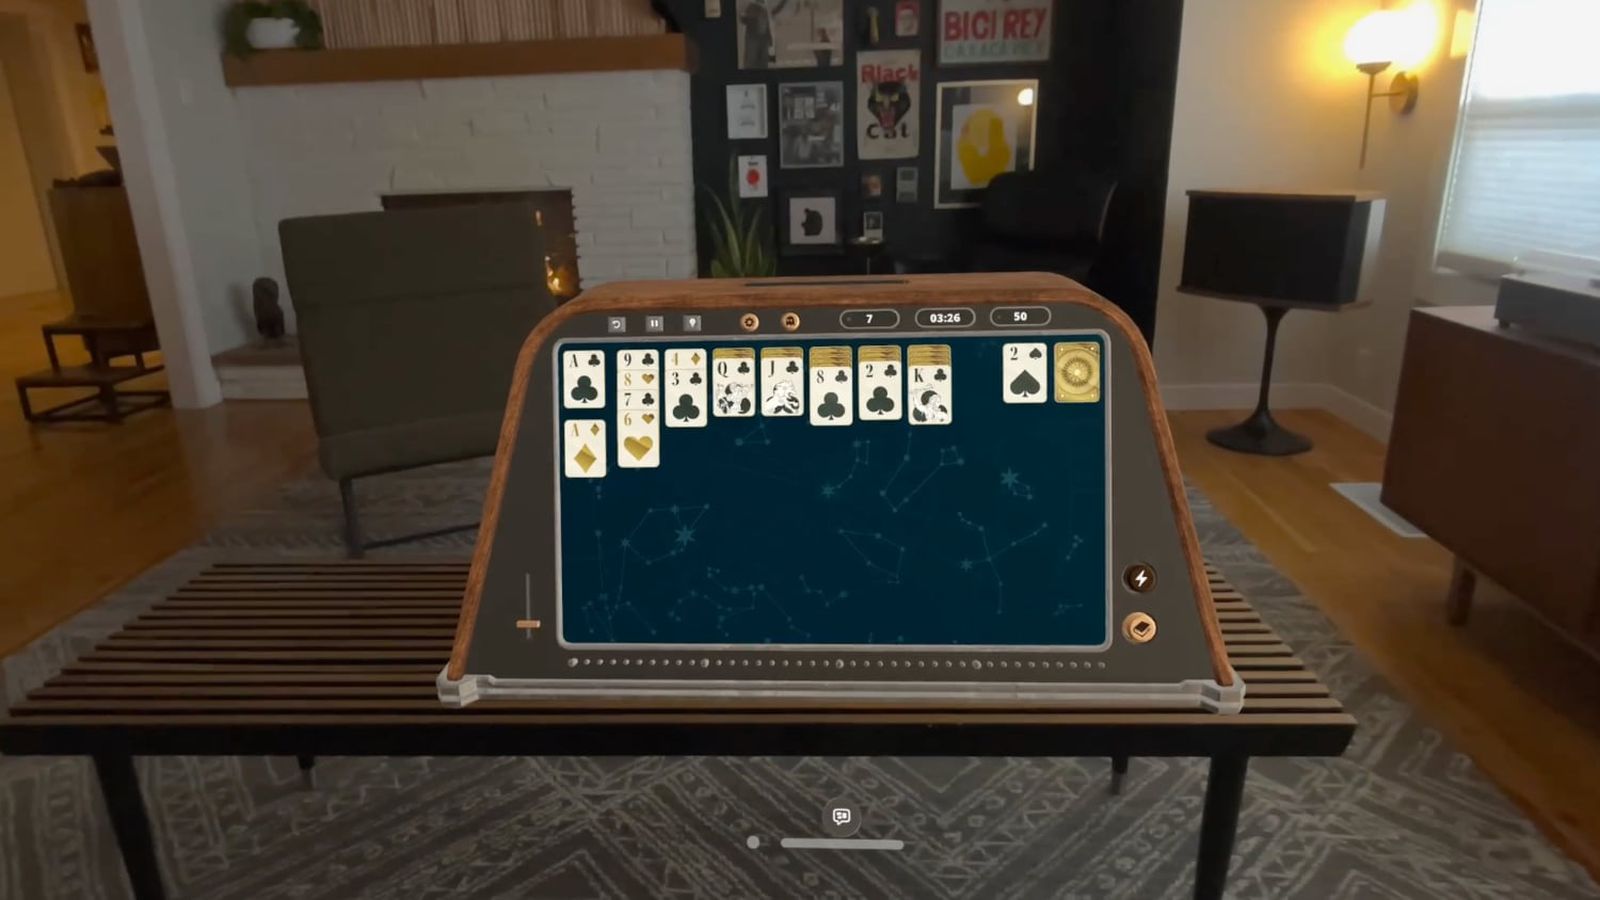 Van iPhoneIslam.com, een virtueel solitaire-spel dat wordt gespeeld op een augmented reality-apparaat in een modern ingerichte woonkamer in de week van 19-25 april.